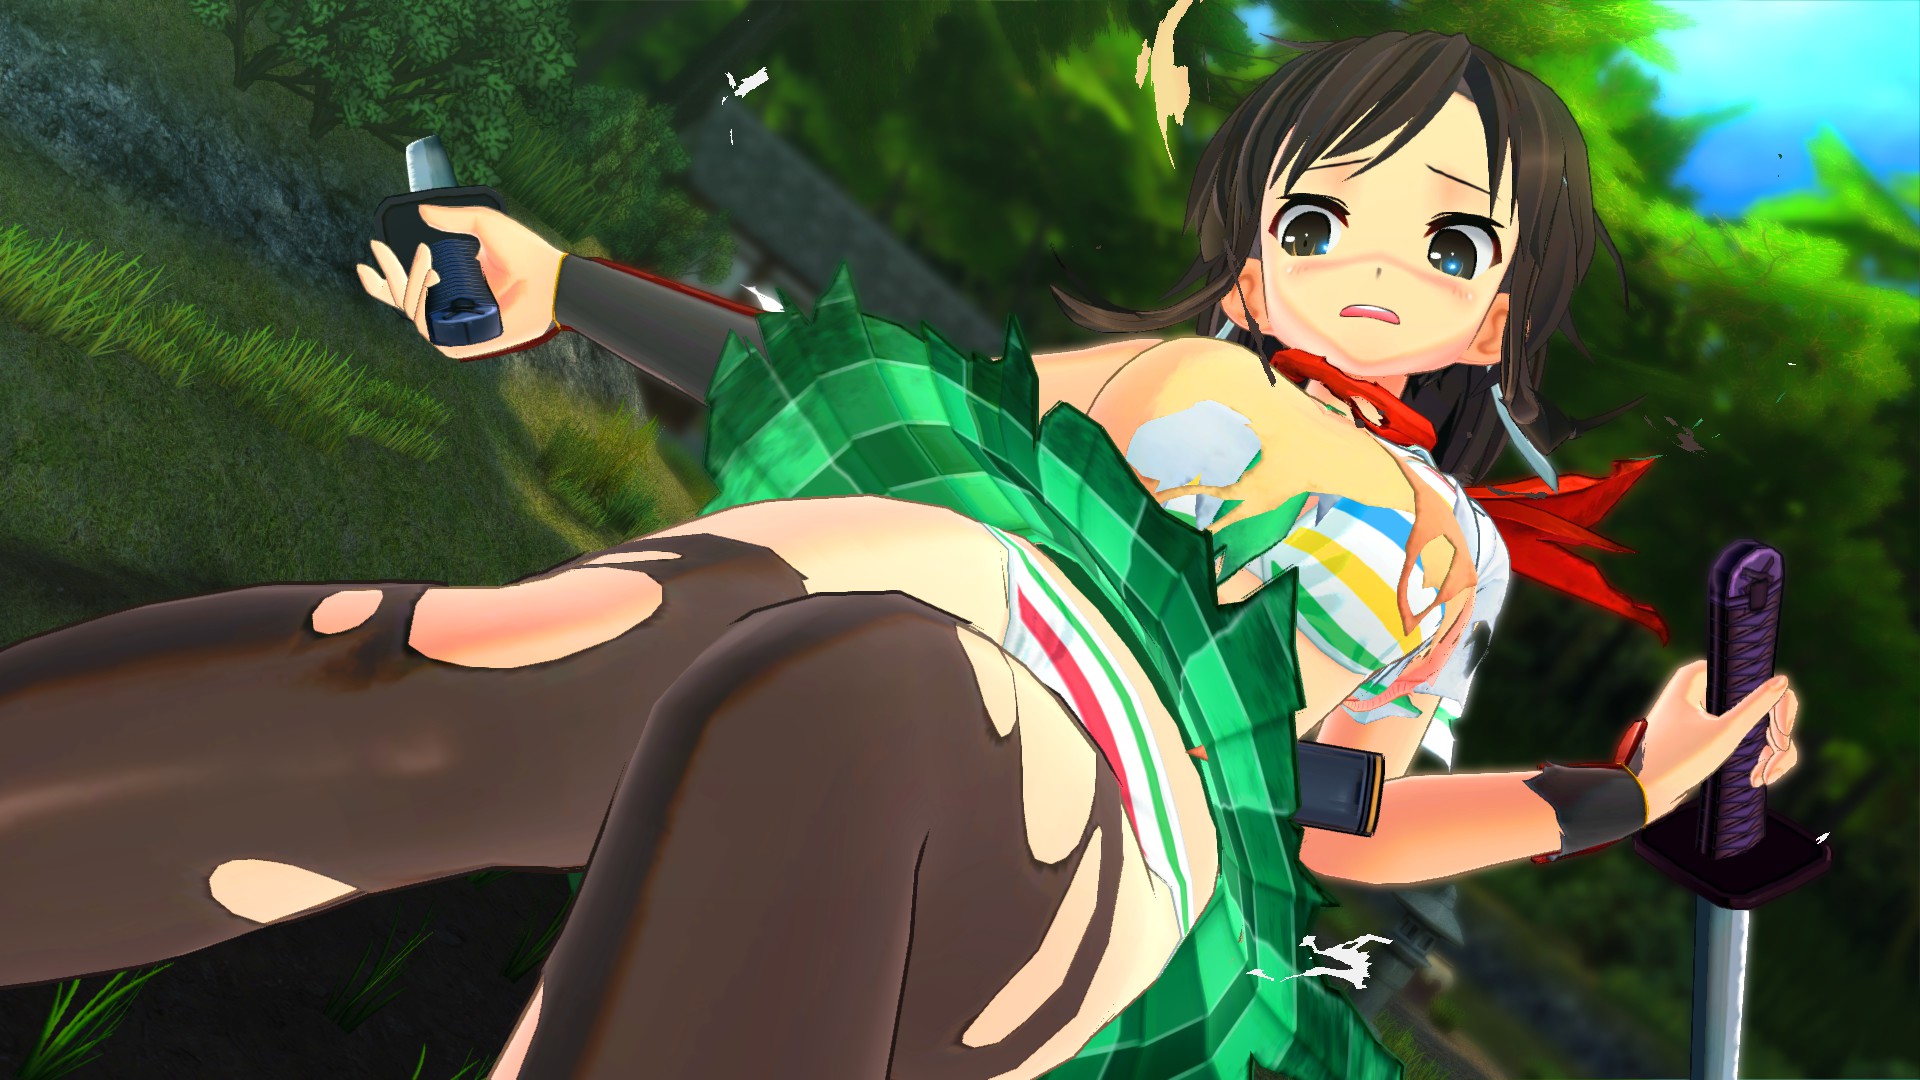 SENRAN KAGURA Burst Re:Newal - 'Yumi' Character and Campaign on Steam